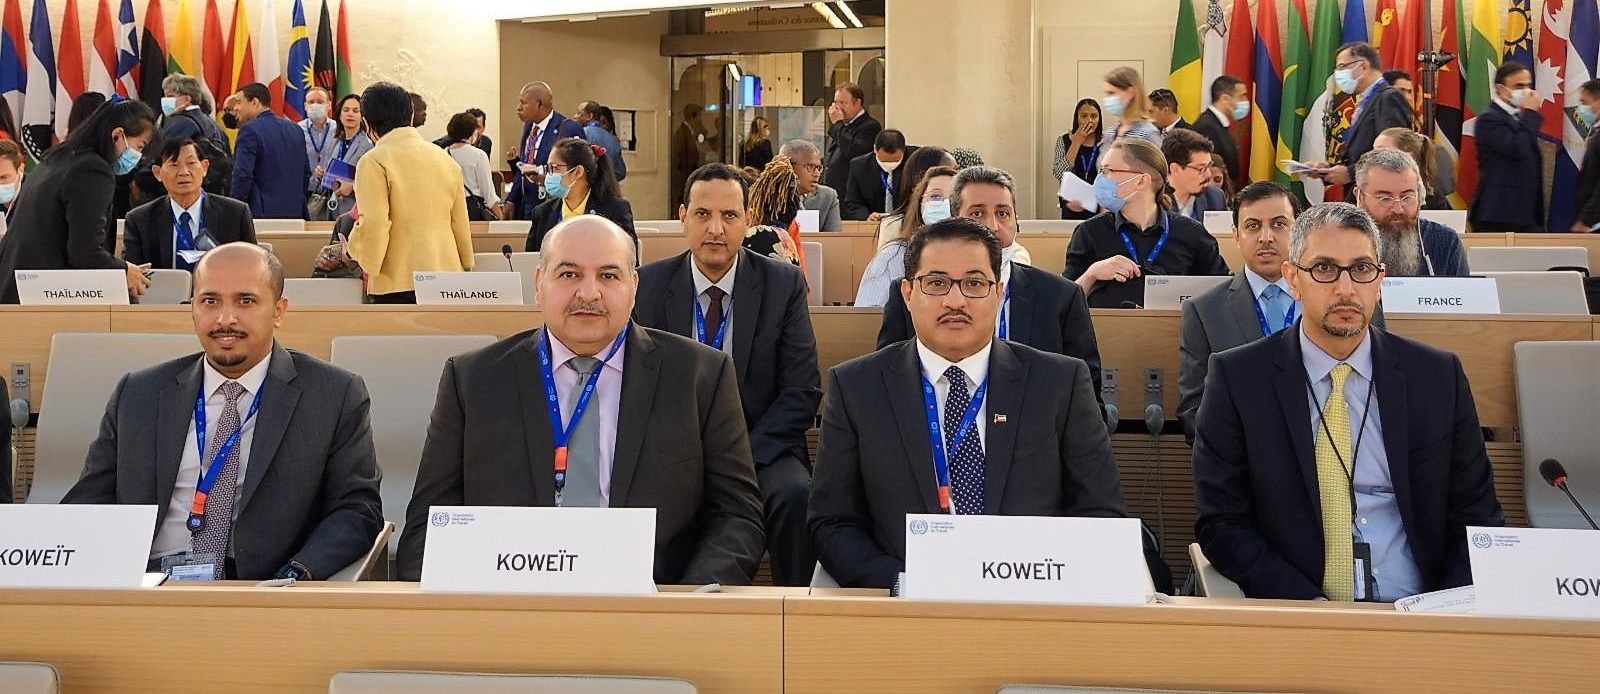 وزير العدل المستشار جمال الجلاوي خلال مشاركته في فعاليات مؤتمر العمل الدولي بجنيف